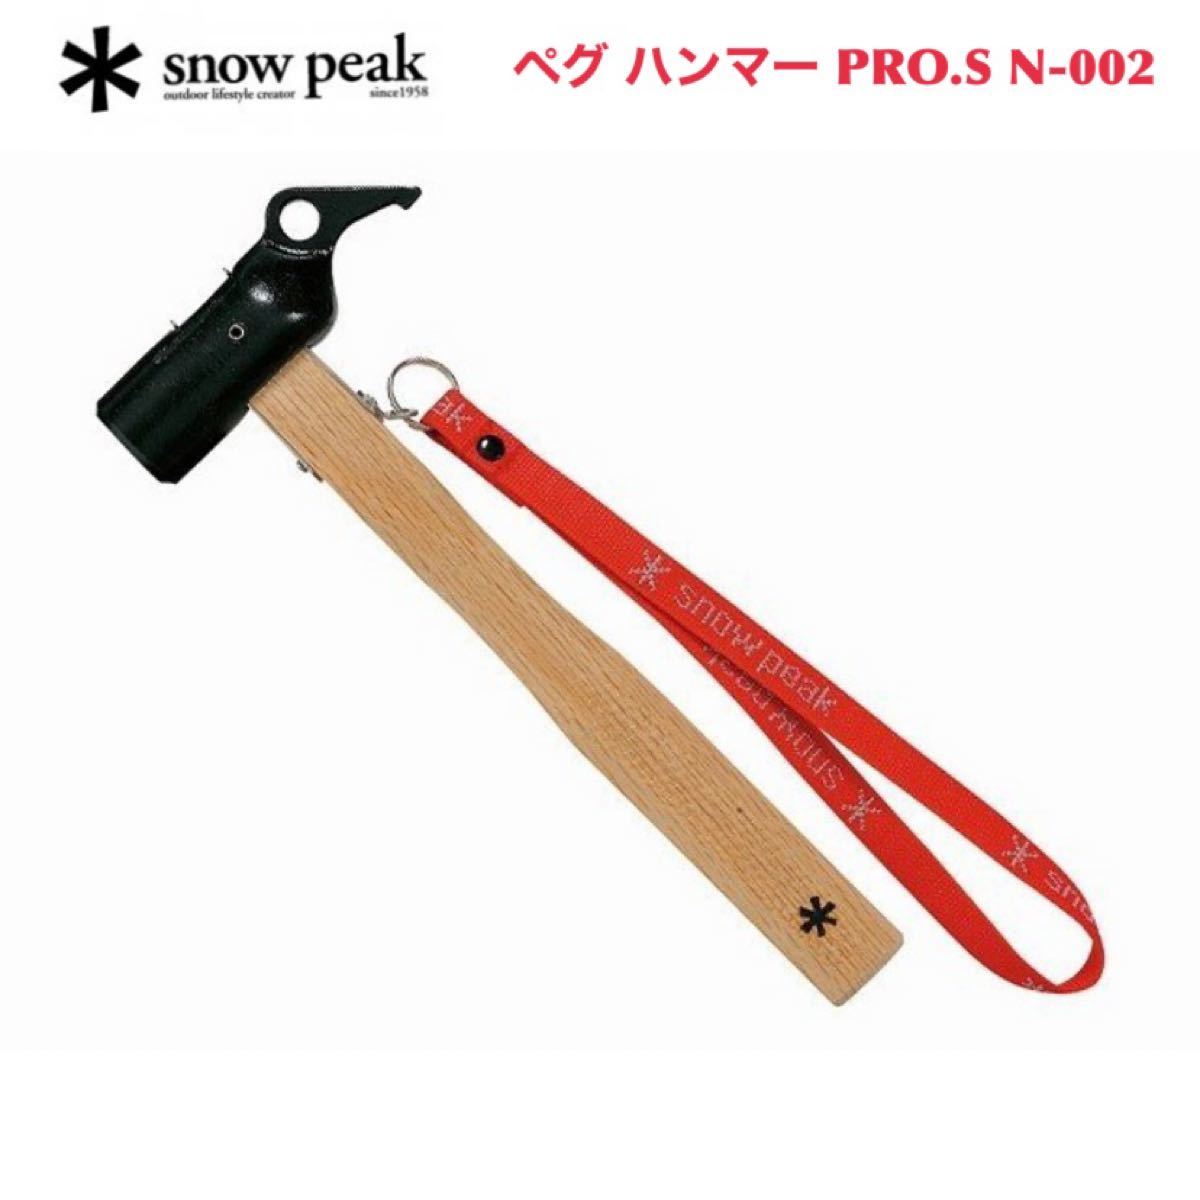 スノーピーク ペグハンマー PRO.S N-002 snowpeak